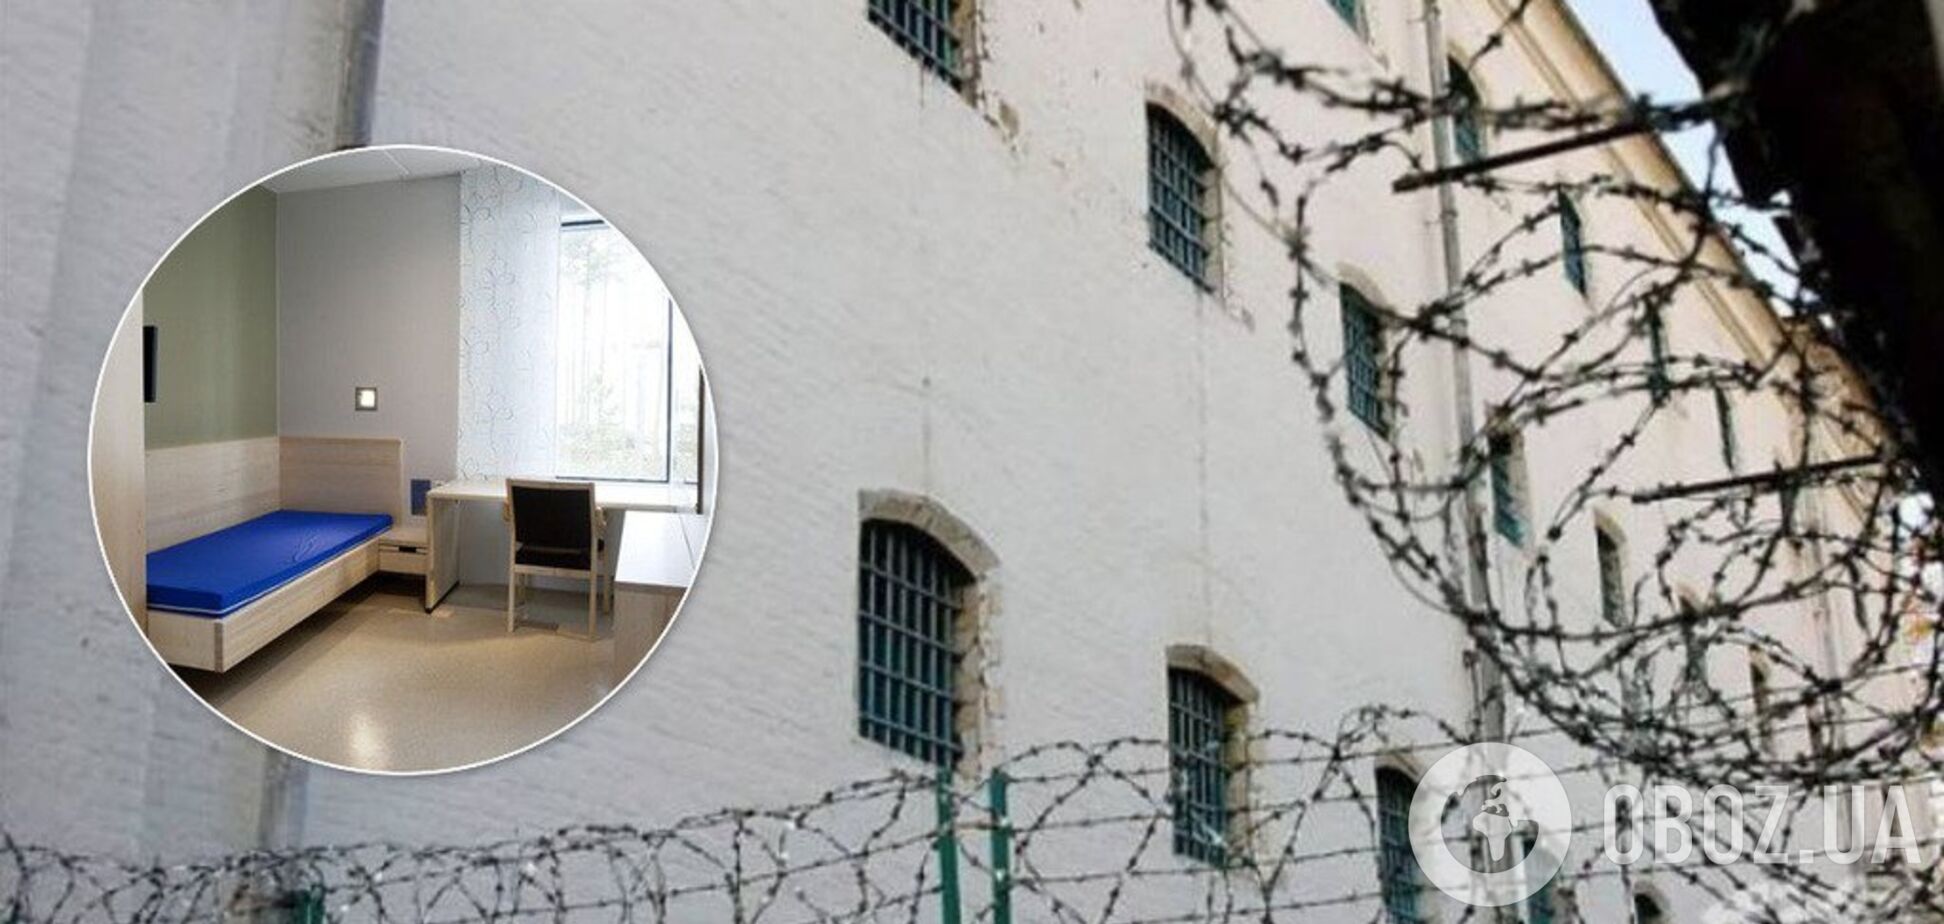 СИЗО-отели для элитных преступников: в Украине планируют закрыть часть тюрем